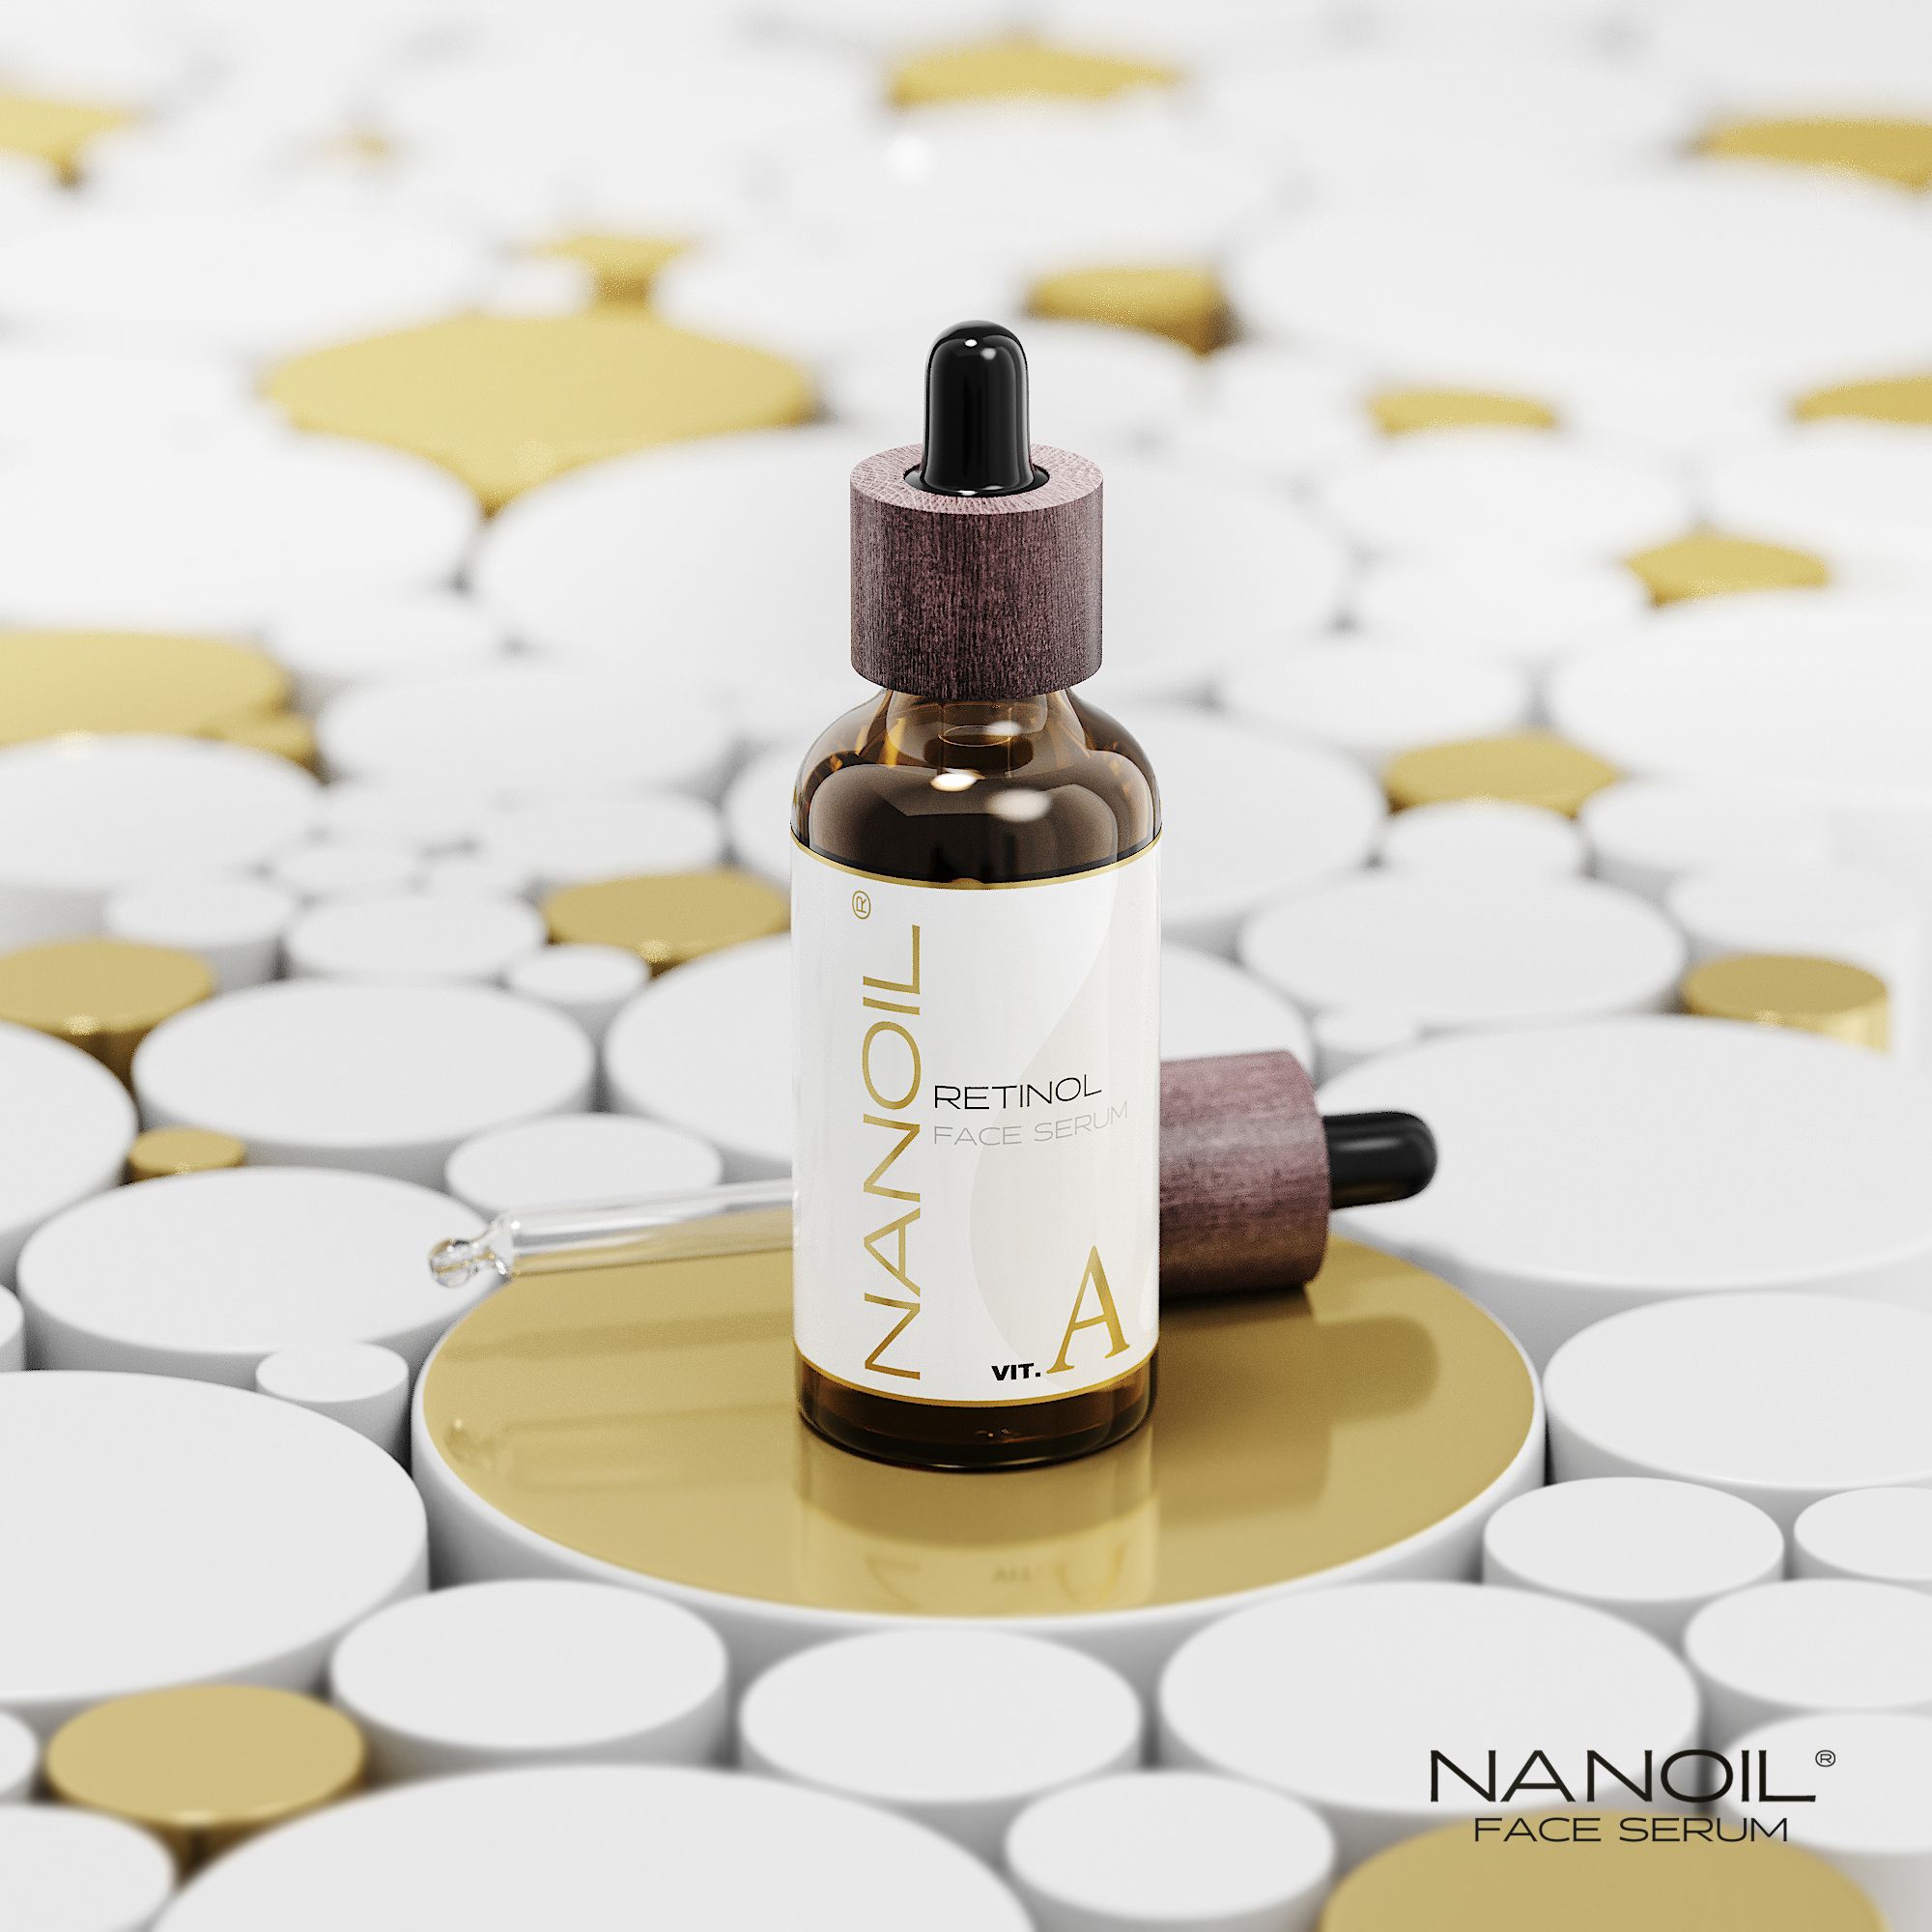 Découvrez le traitement au rétinol conçu par Nanoil: le meilleur sérum pour le visage actuellement disponible!